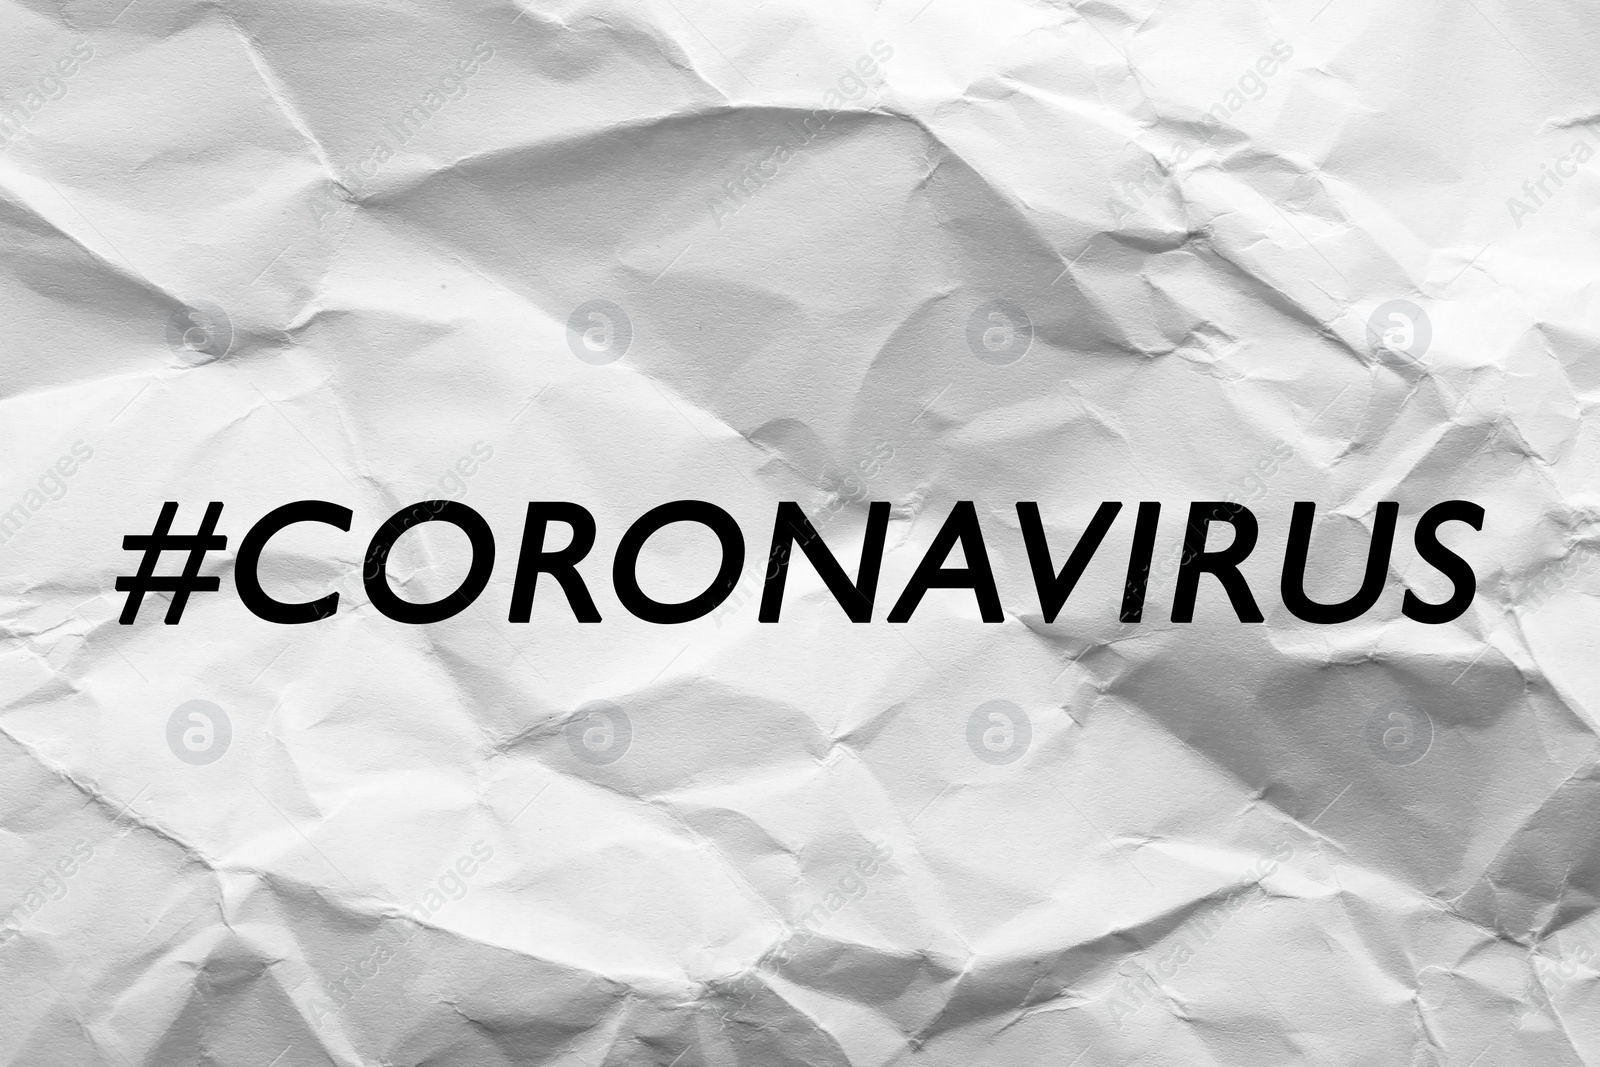 Image of Hashtag Coronavirus written on white crumpled paper